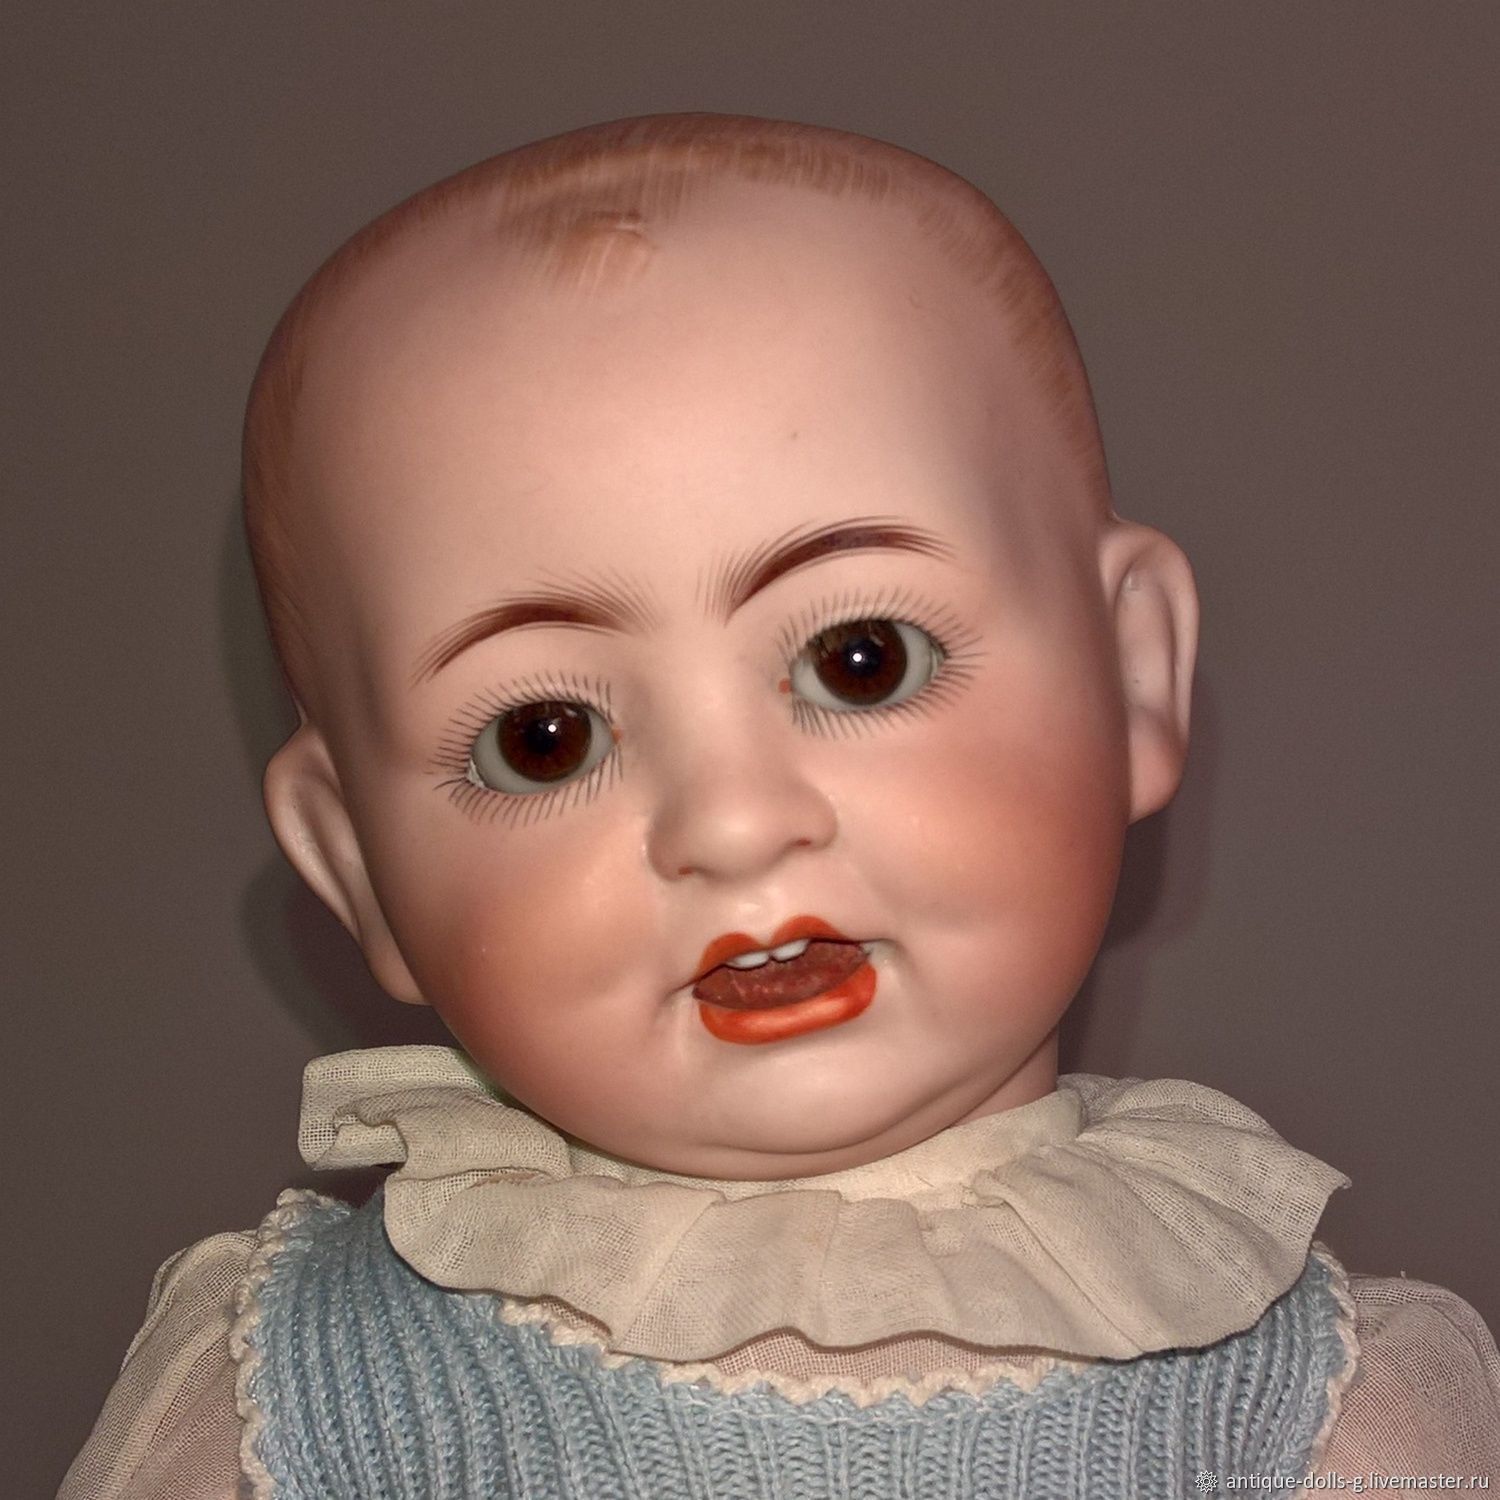 Антикварная немецкая кукла Alt, Beck & Gottschalck 1322, Шарнирная кукла, Ростов-на-Дону,  Фото №1